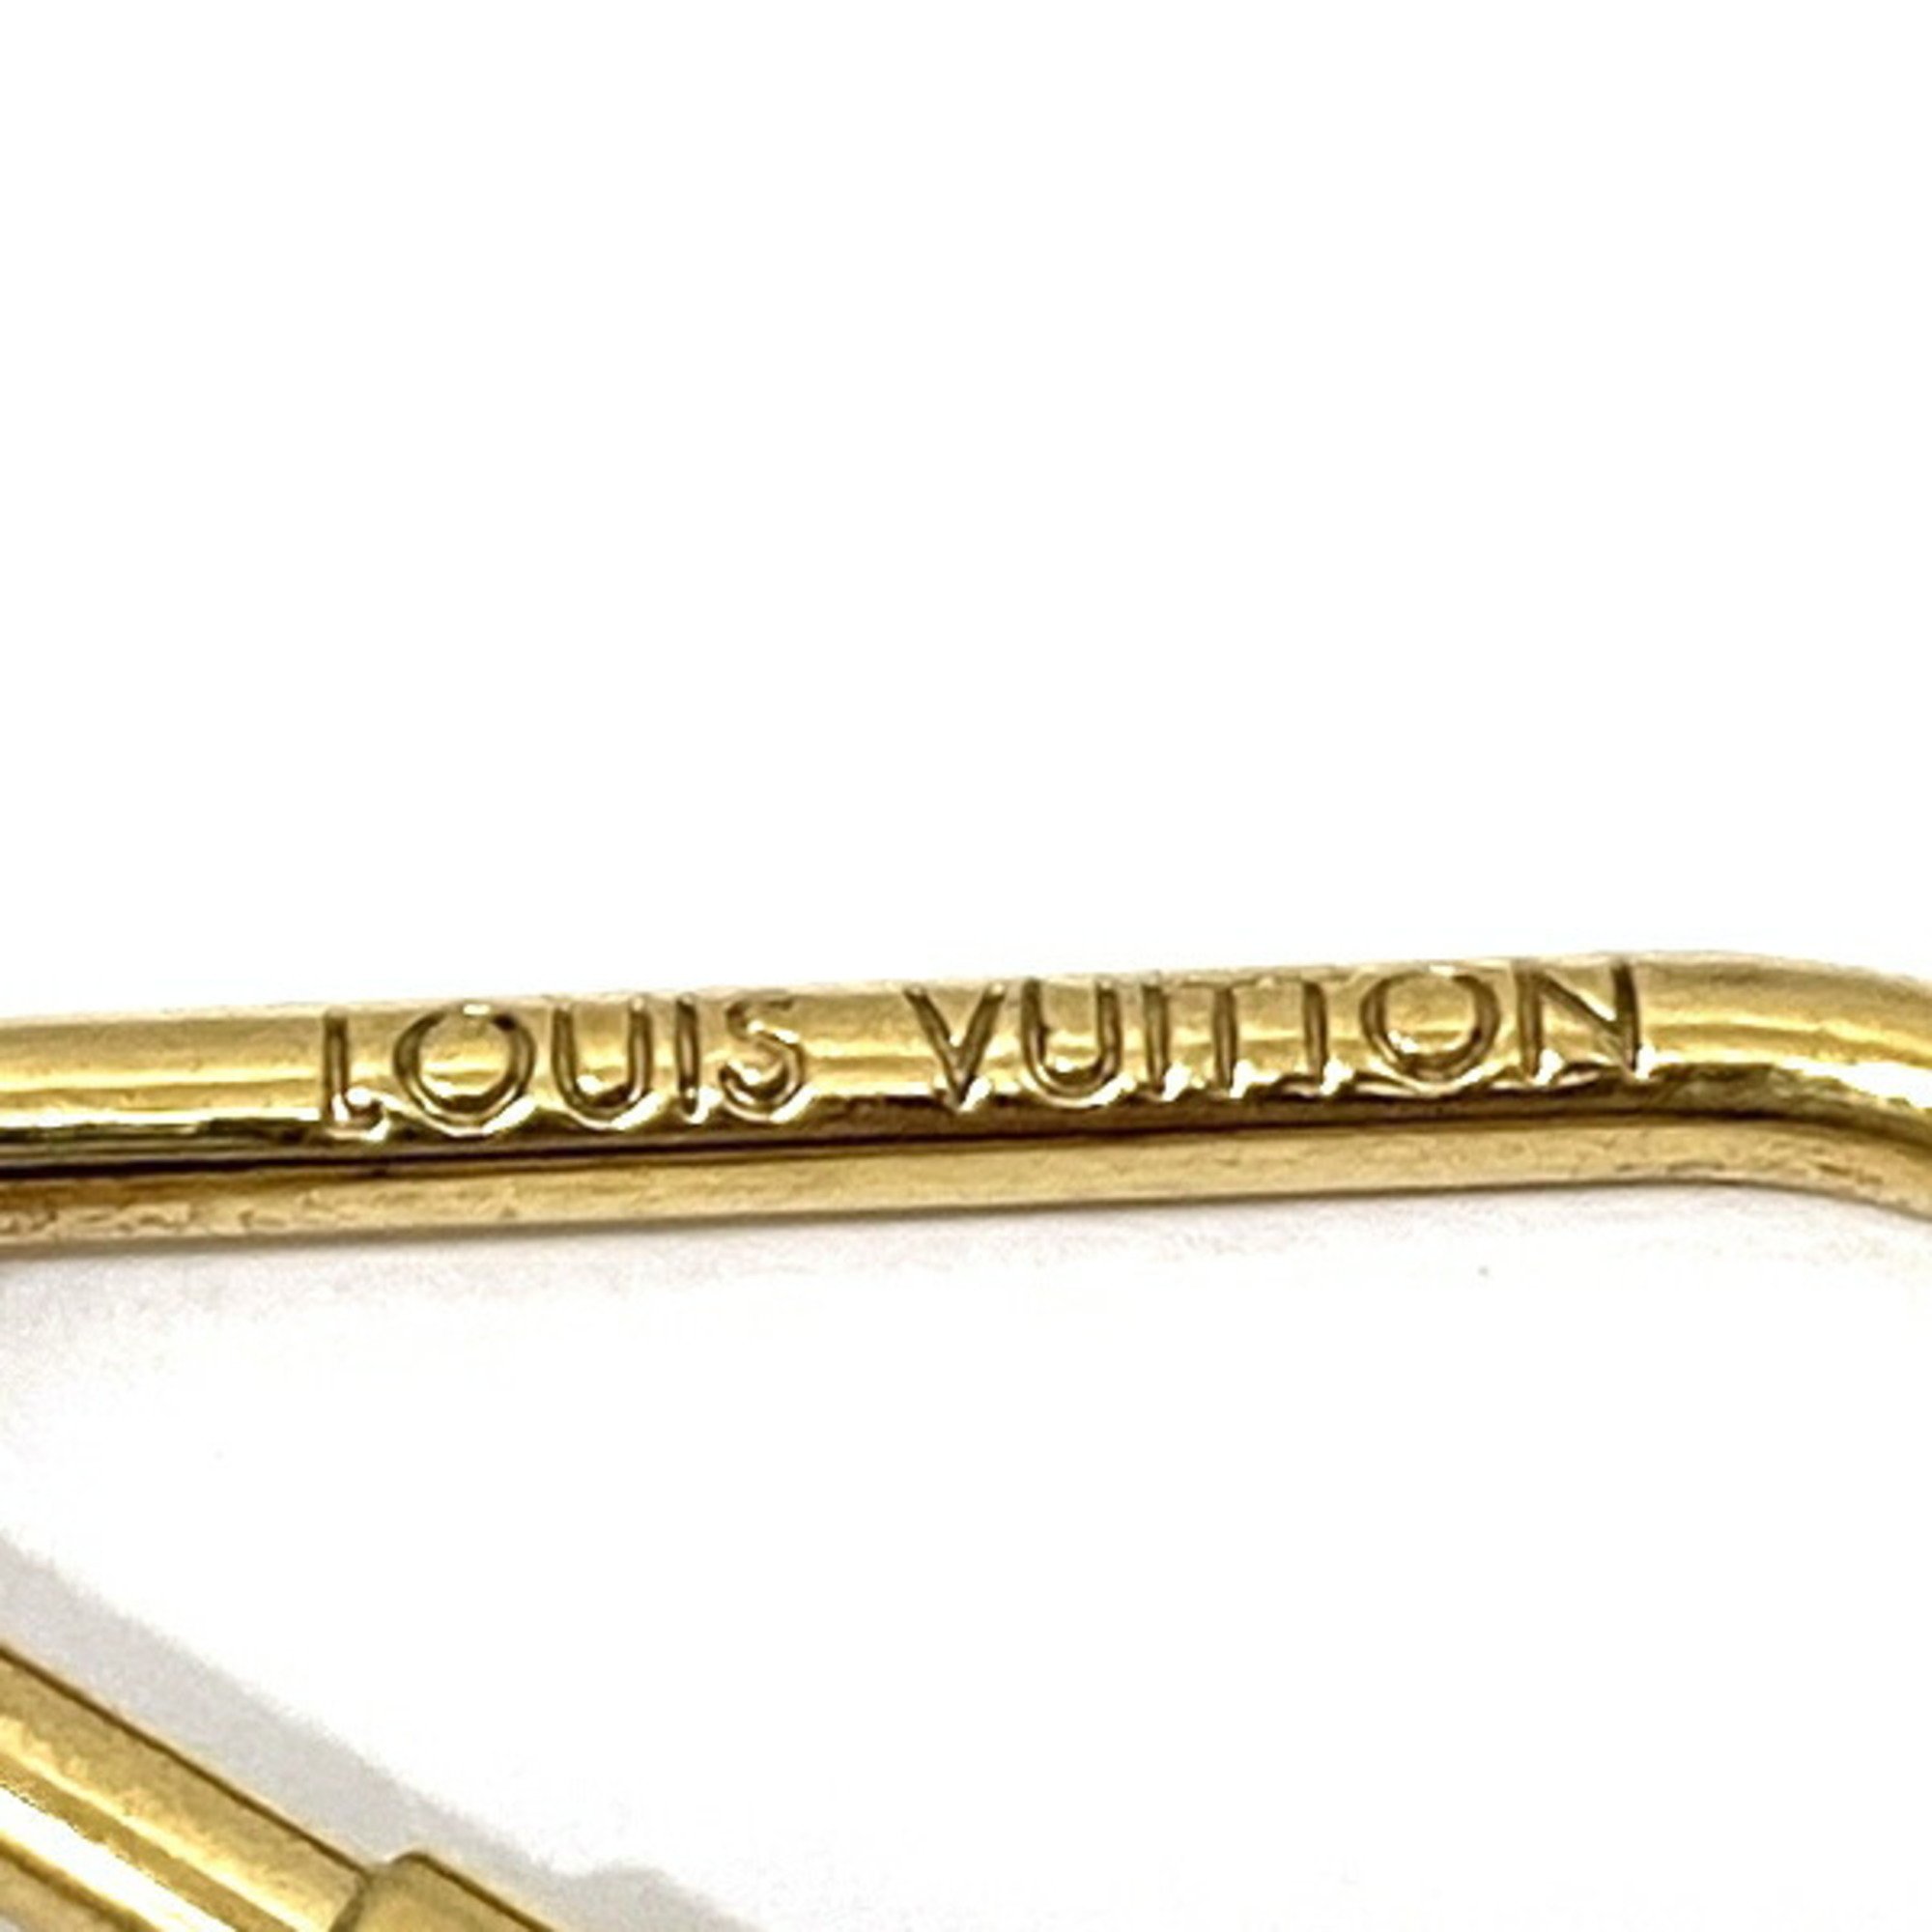 Louis Vuitton Monogram Flower Portocre Puzzle M65218 Brand Accessories Keychain Men's Women's